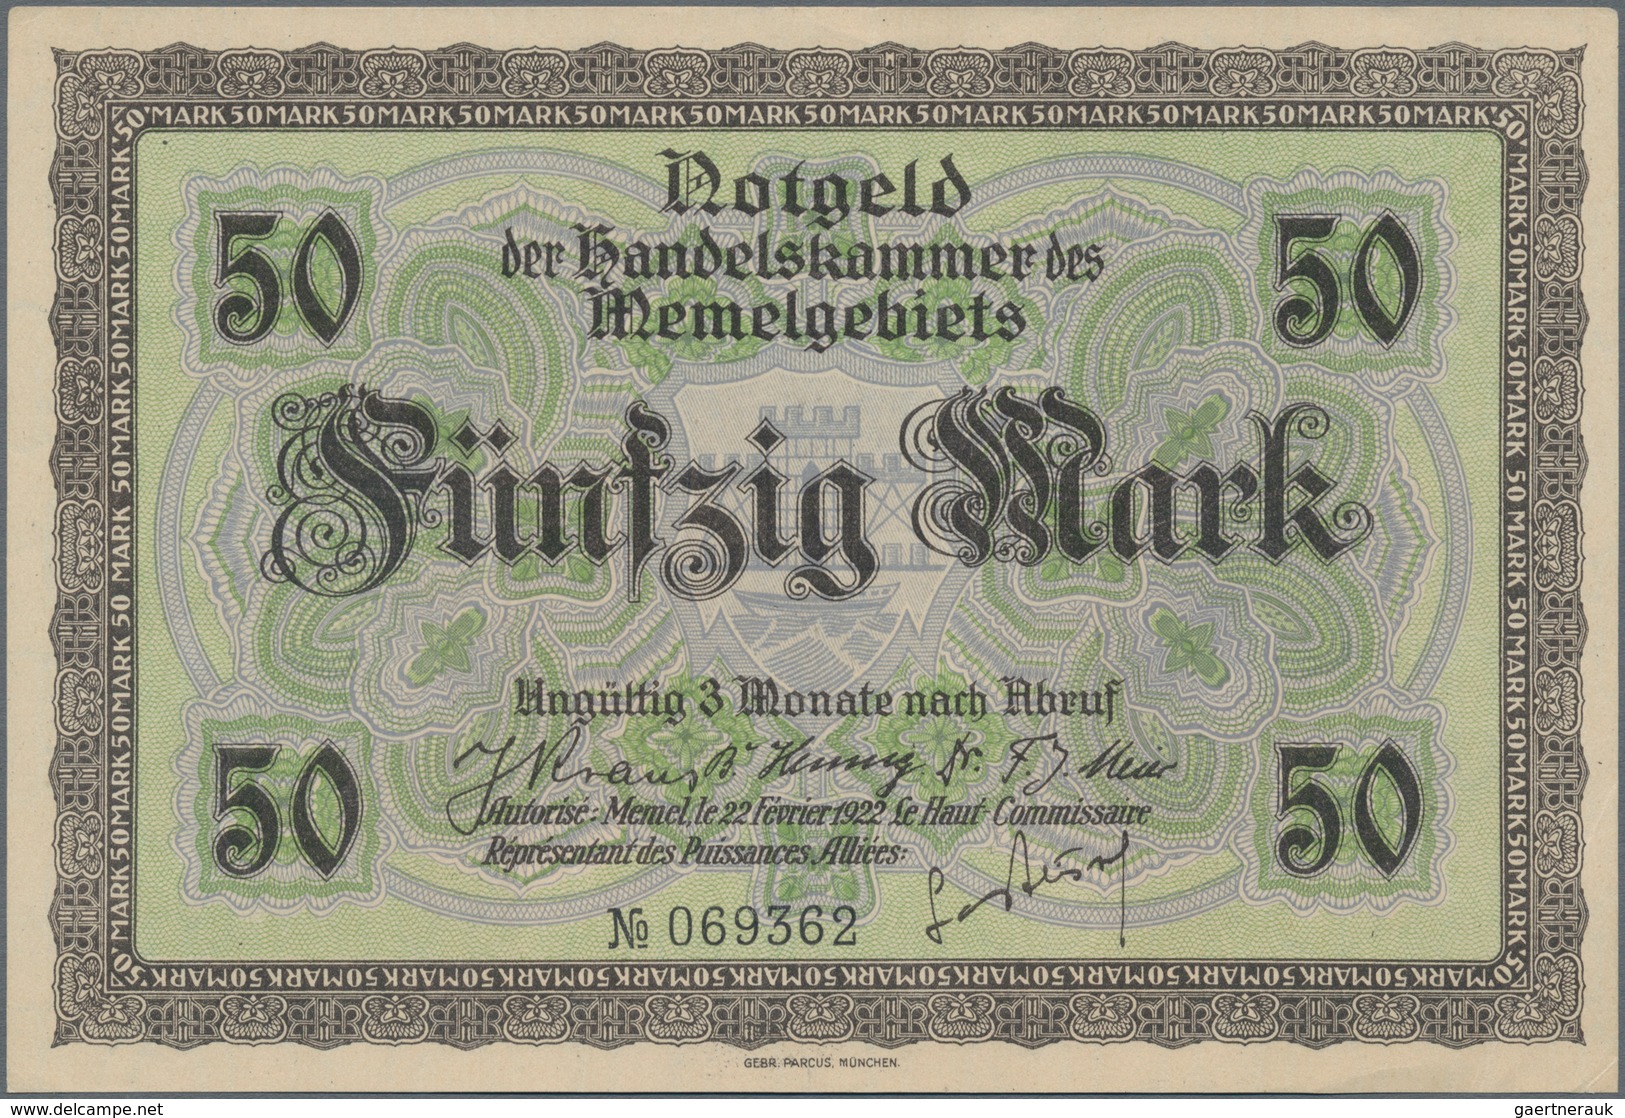 Deutschland - Nebengebiete Deutsches Reich: Memel, großes Lot mit 13 Banknoten, dabei ½ Mark Ro.846b